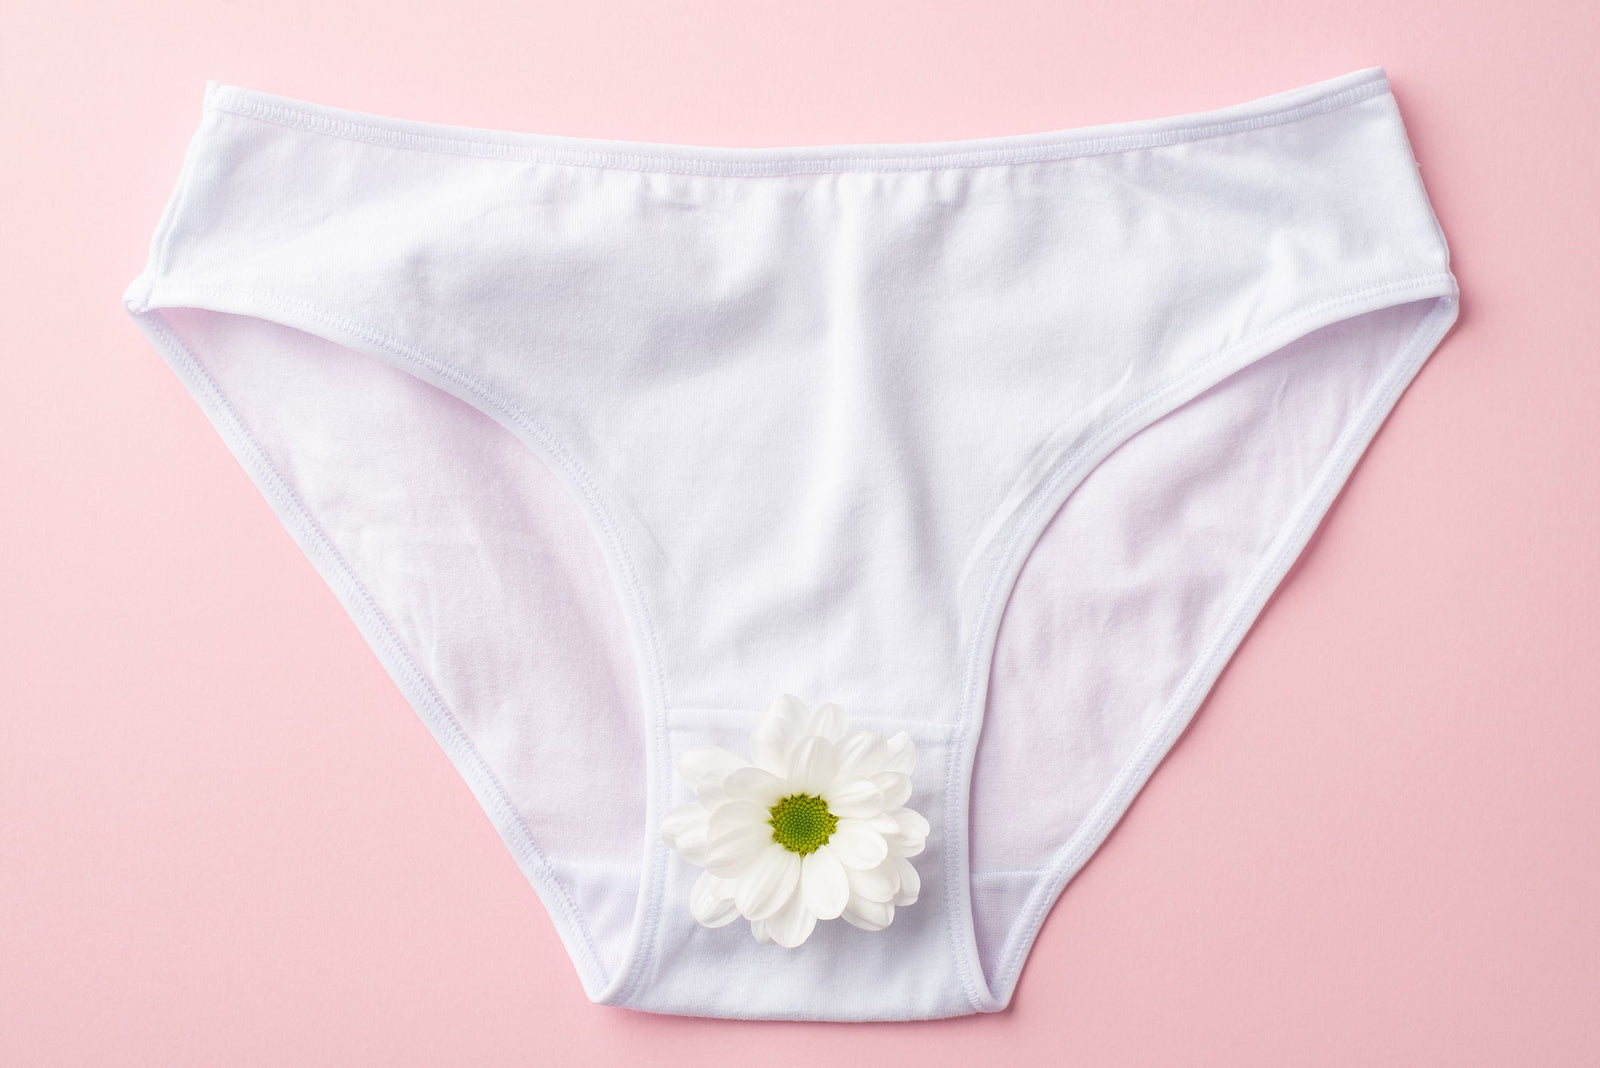 White cotton underwear on a pink background